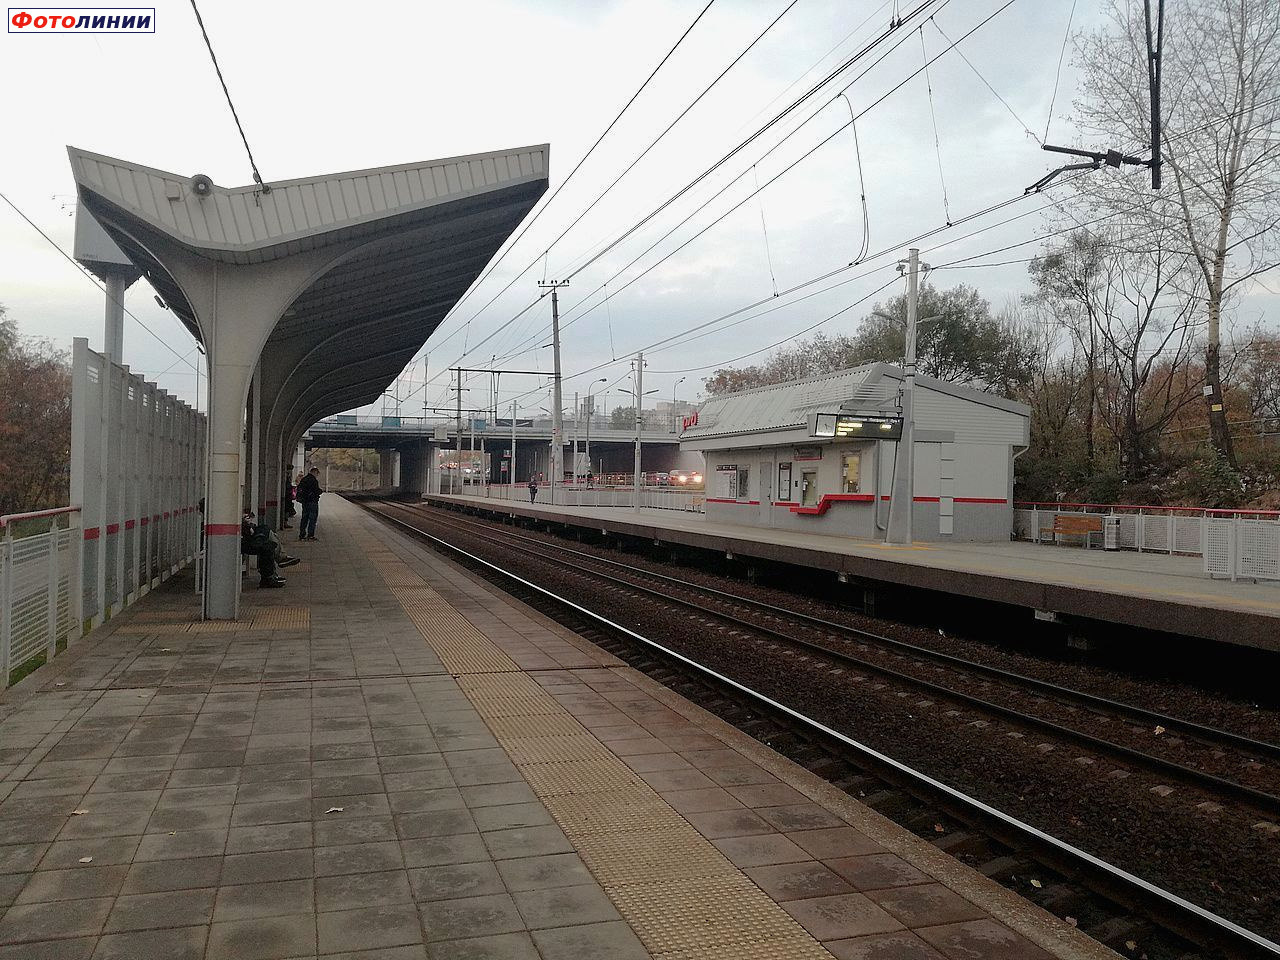 Пассажирский павильон на второй платформе и пригородная касса на первой платформе, вид со второй платформы в нечётном направлении